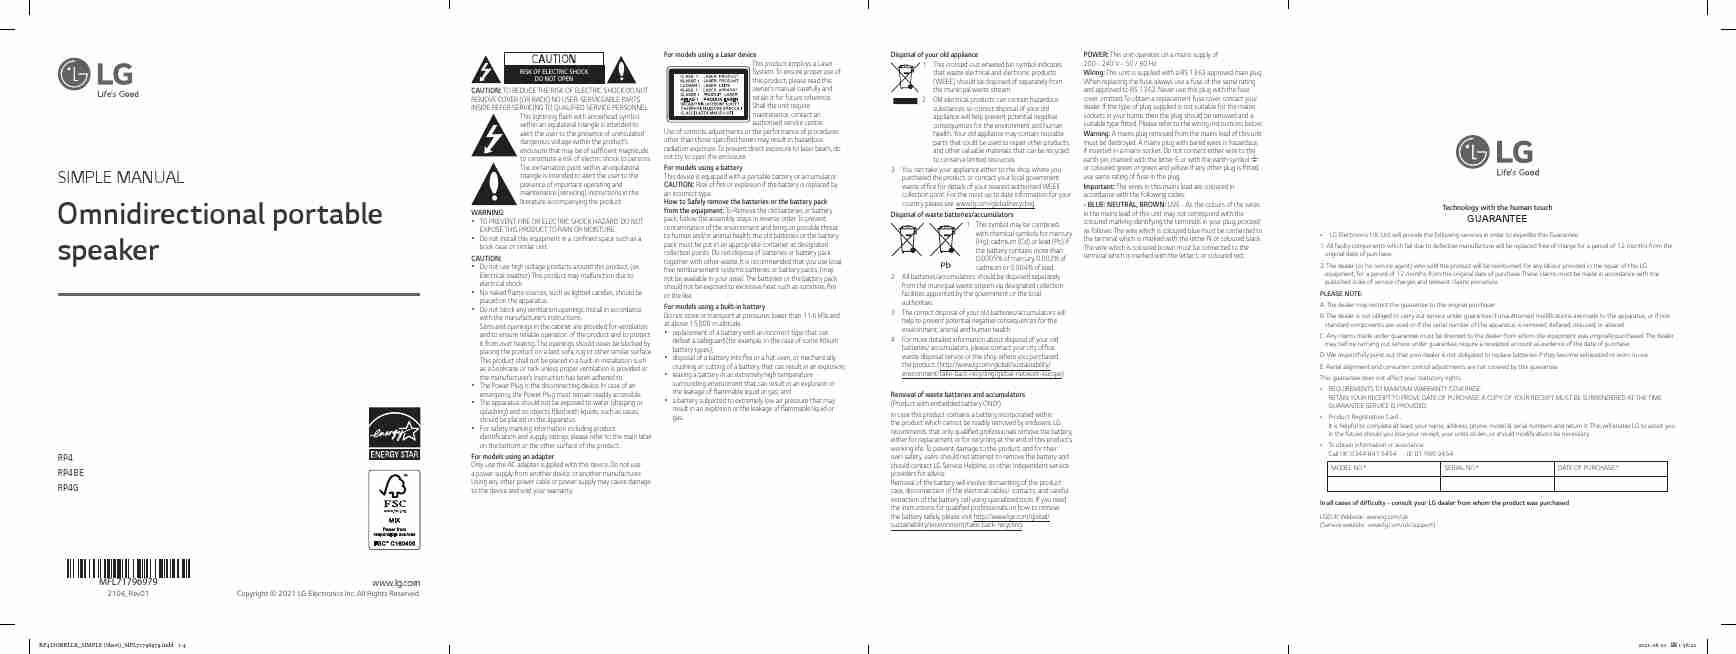 LG RP4-page_pdf